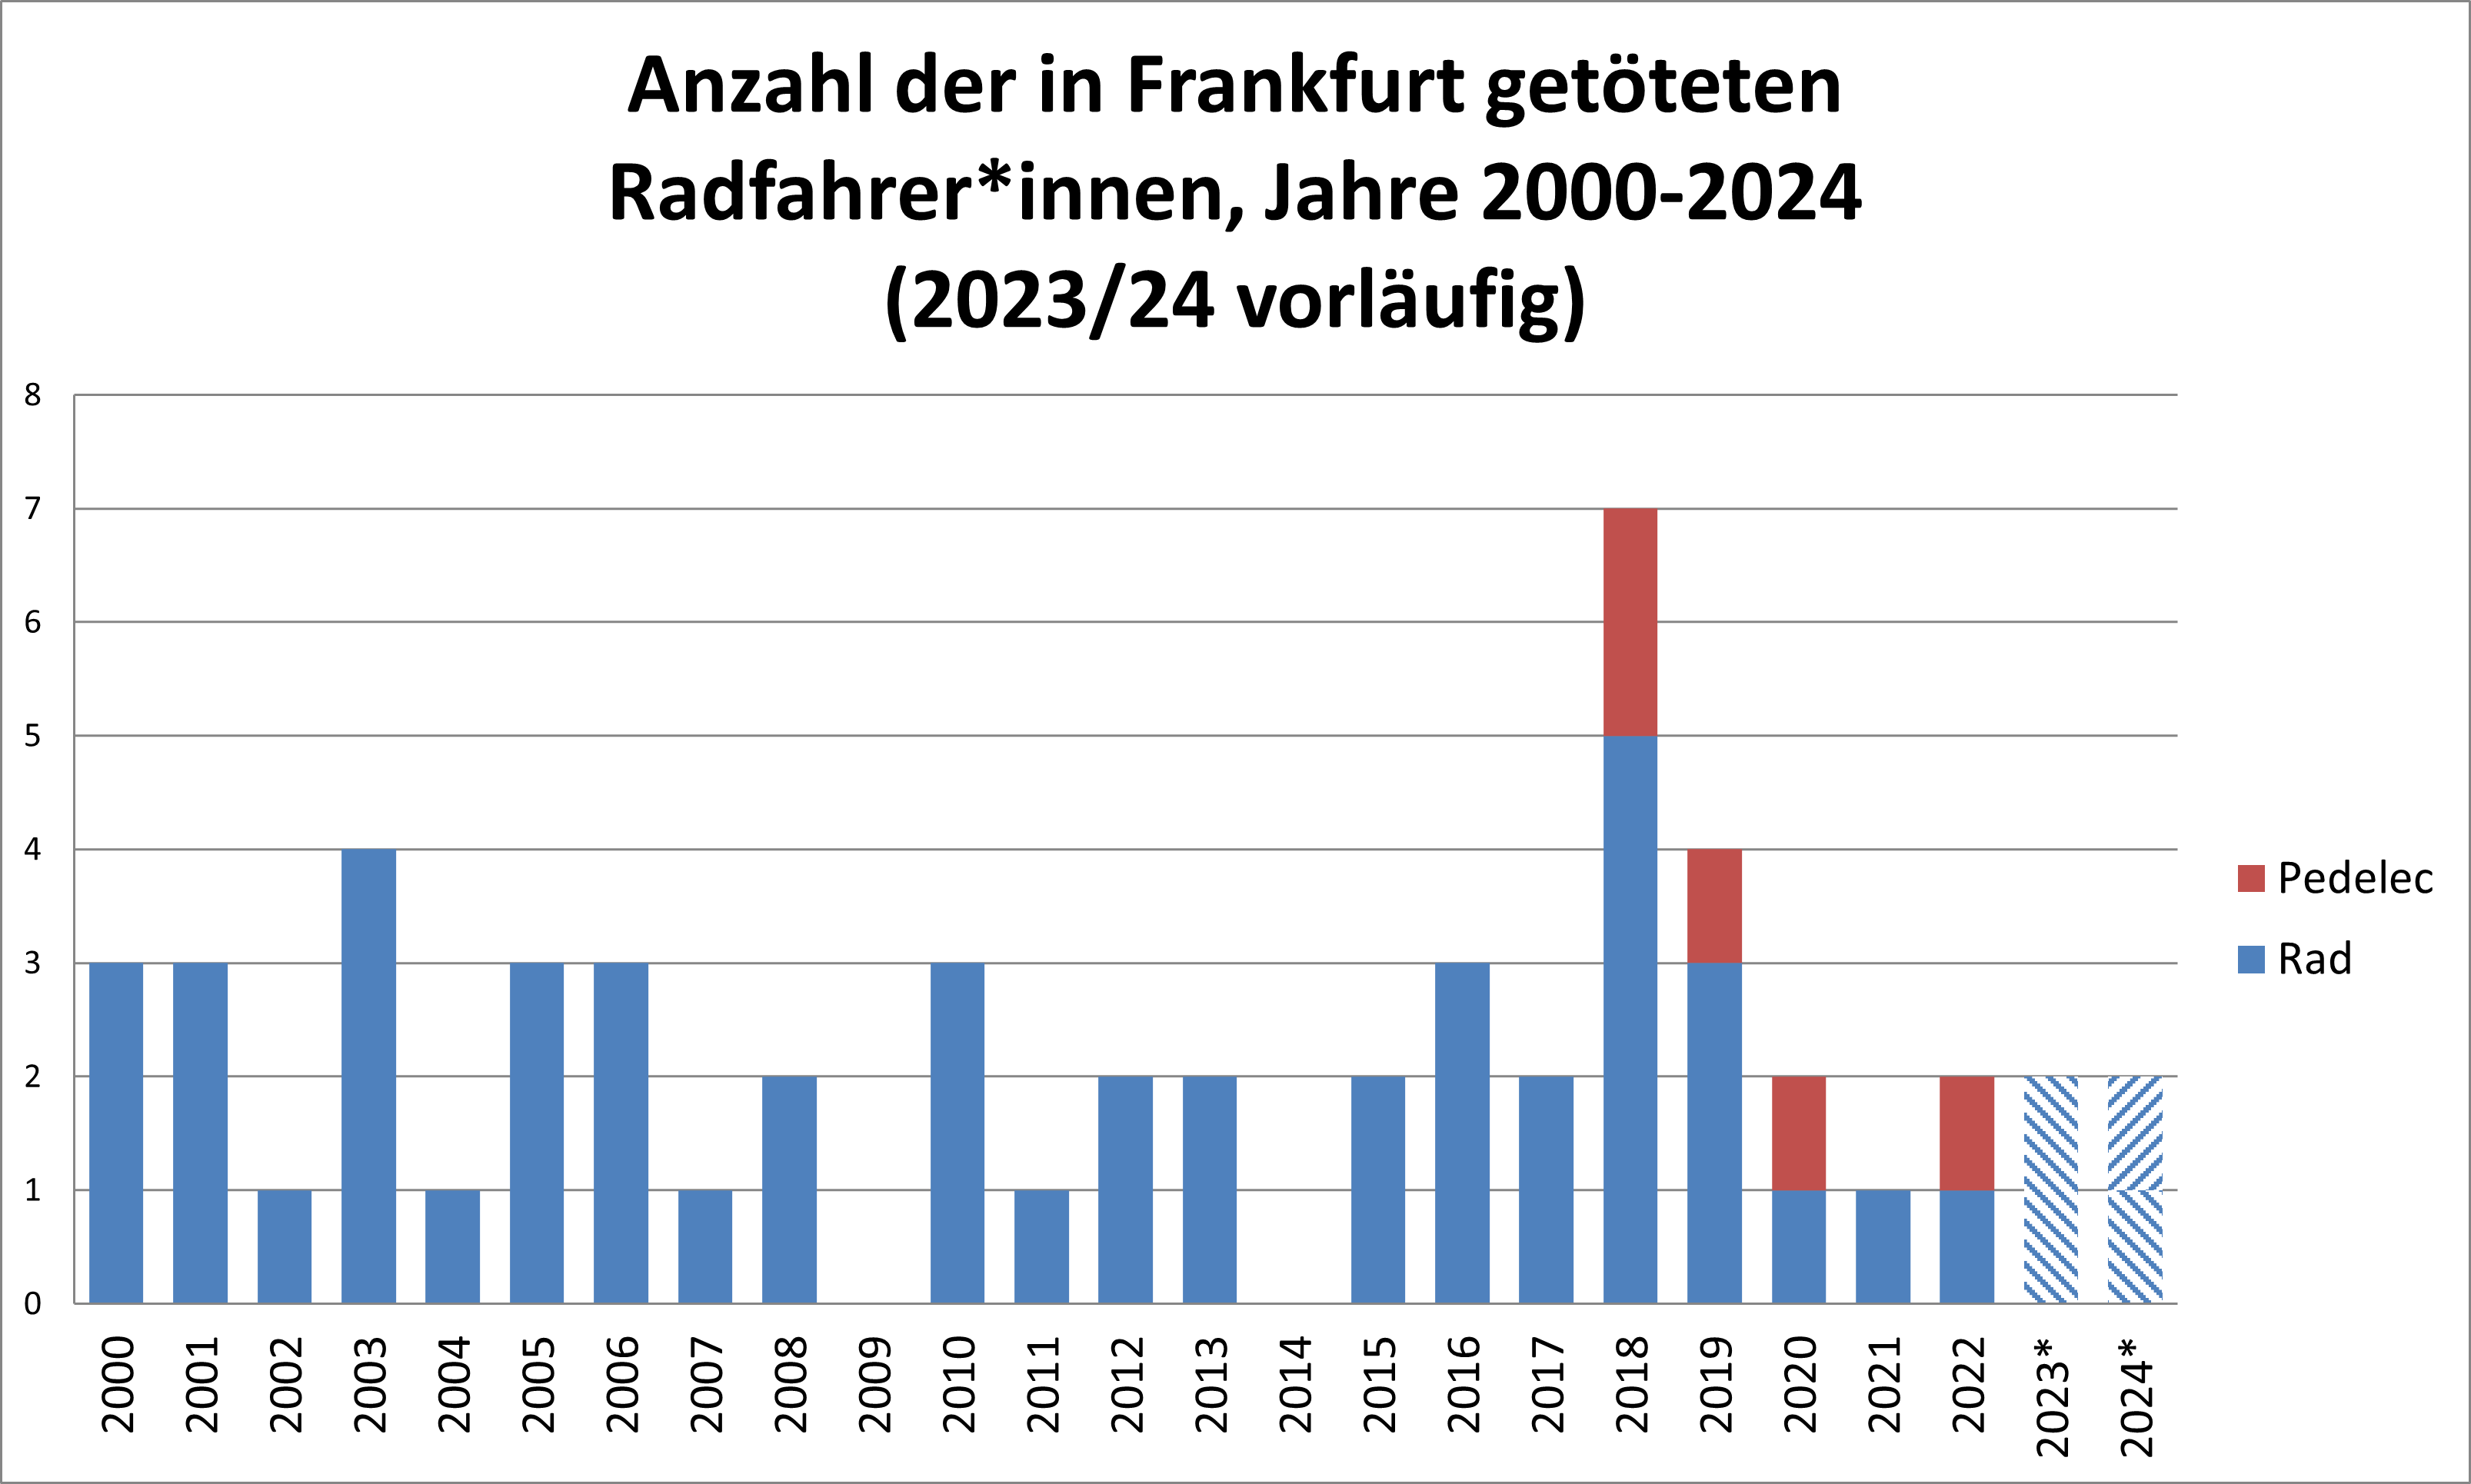 Eine Grafik, die die Anzahl der getöteten Radfahrer*innen in den Jahren 2000 bis 2023 zeigt. Die Zahlen schwanken zwischen null (2009 und 2014) und 7 (2018), ein klarer Trend lässt sich nicht erkennen.